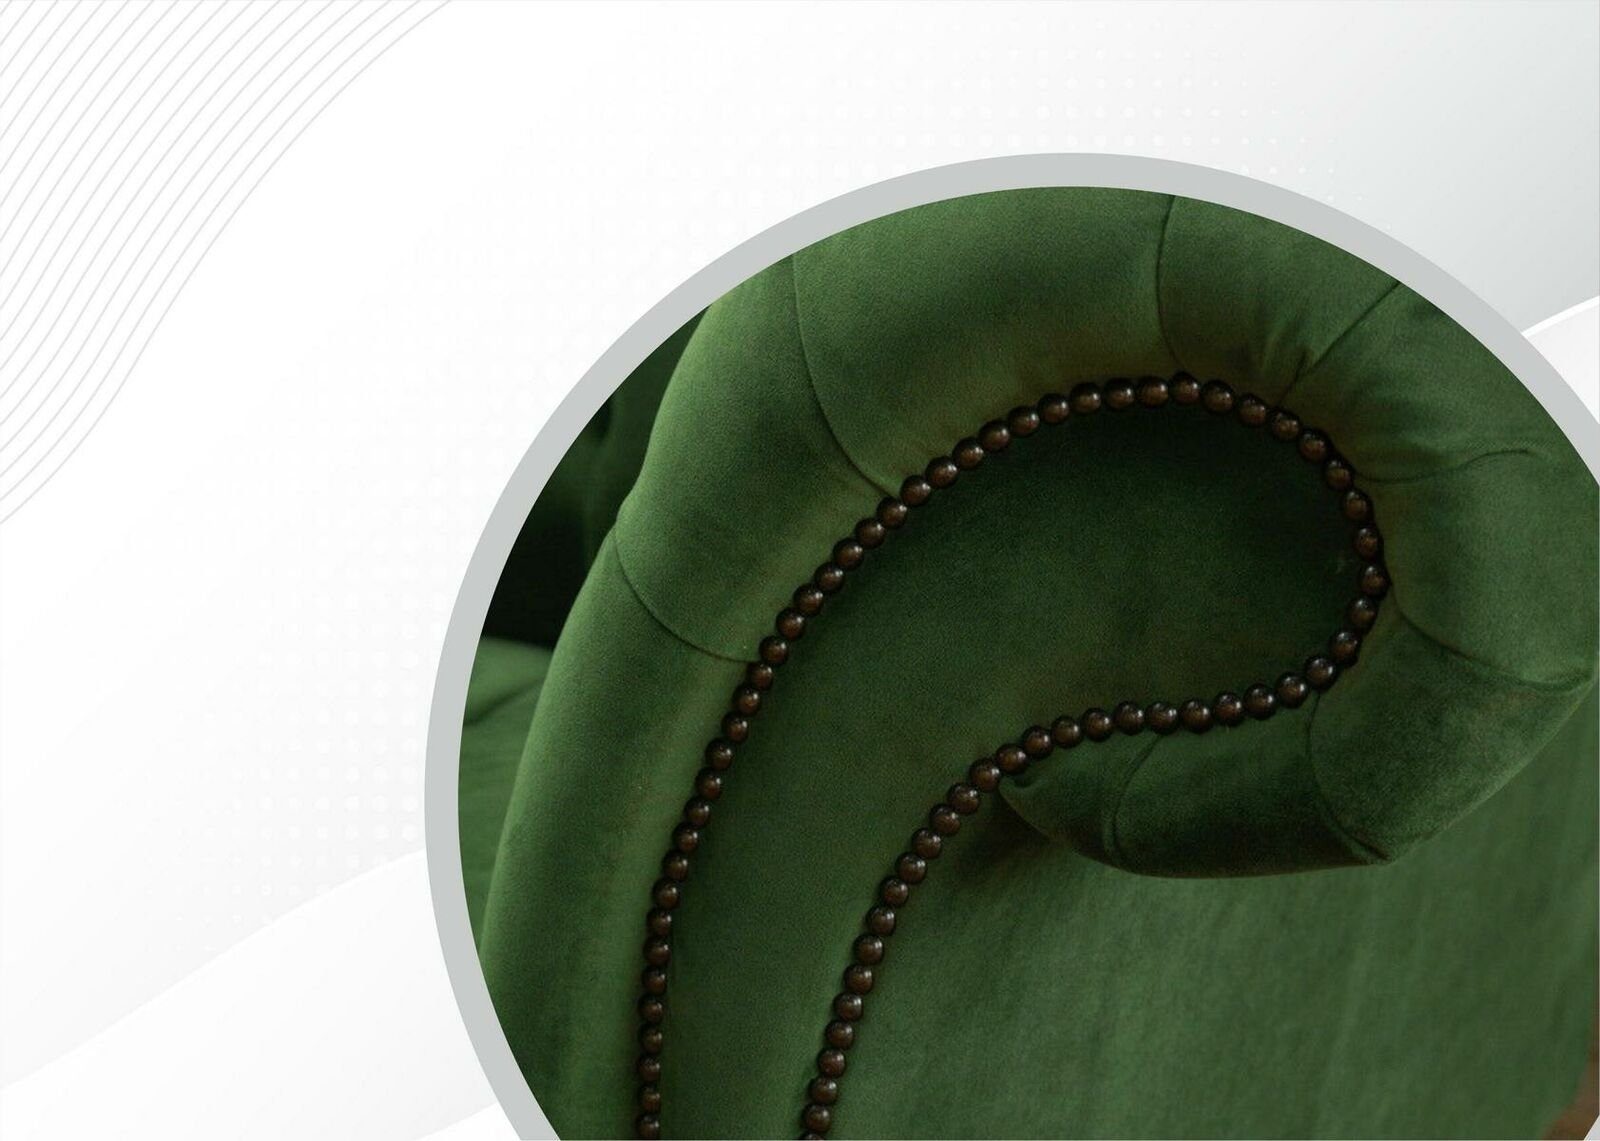 JVmoebel 2 Textil Modern Sitzer Zweisitzer Neu Grün Chesterfield-Sofa, Chesterfield Möbel Luxus Design Sofa